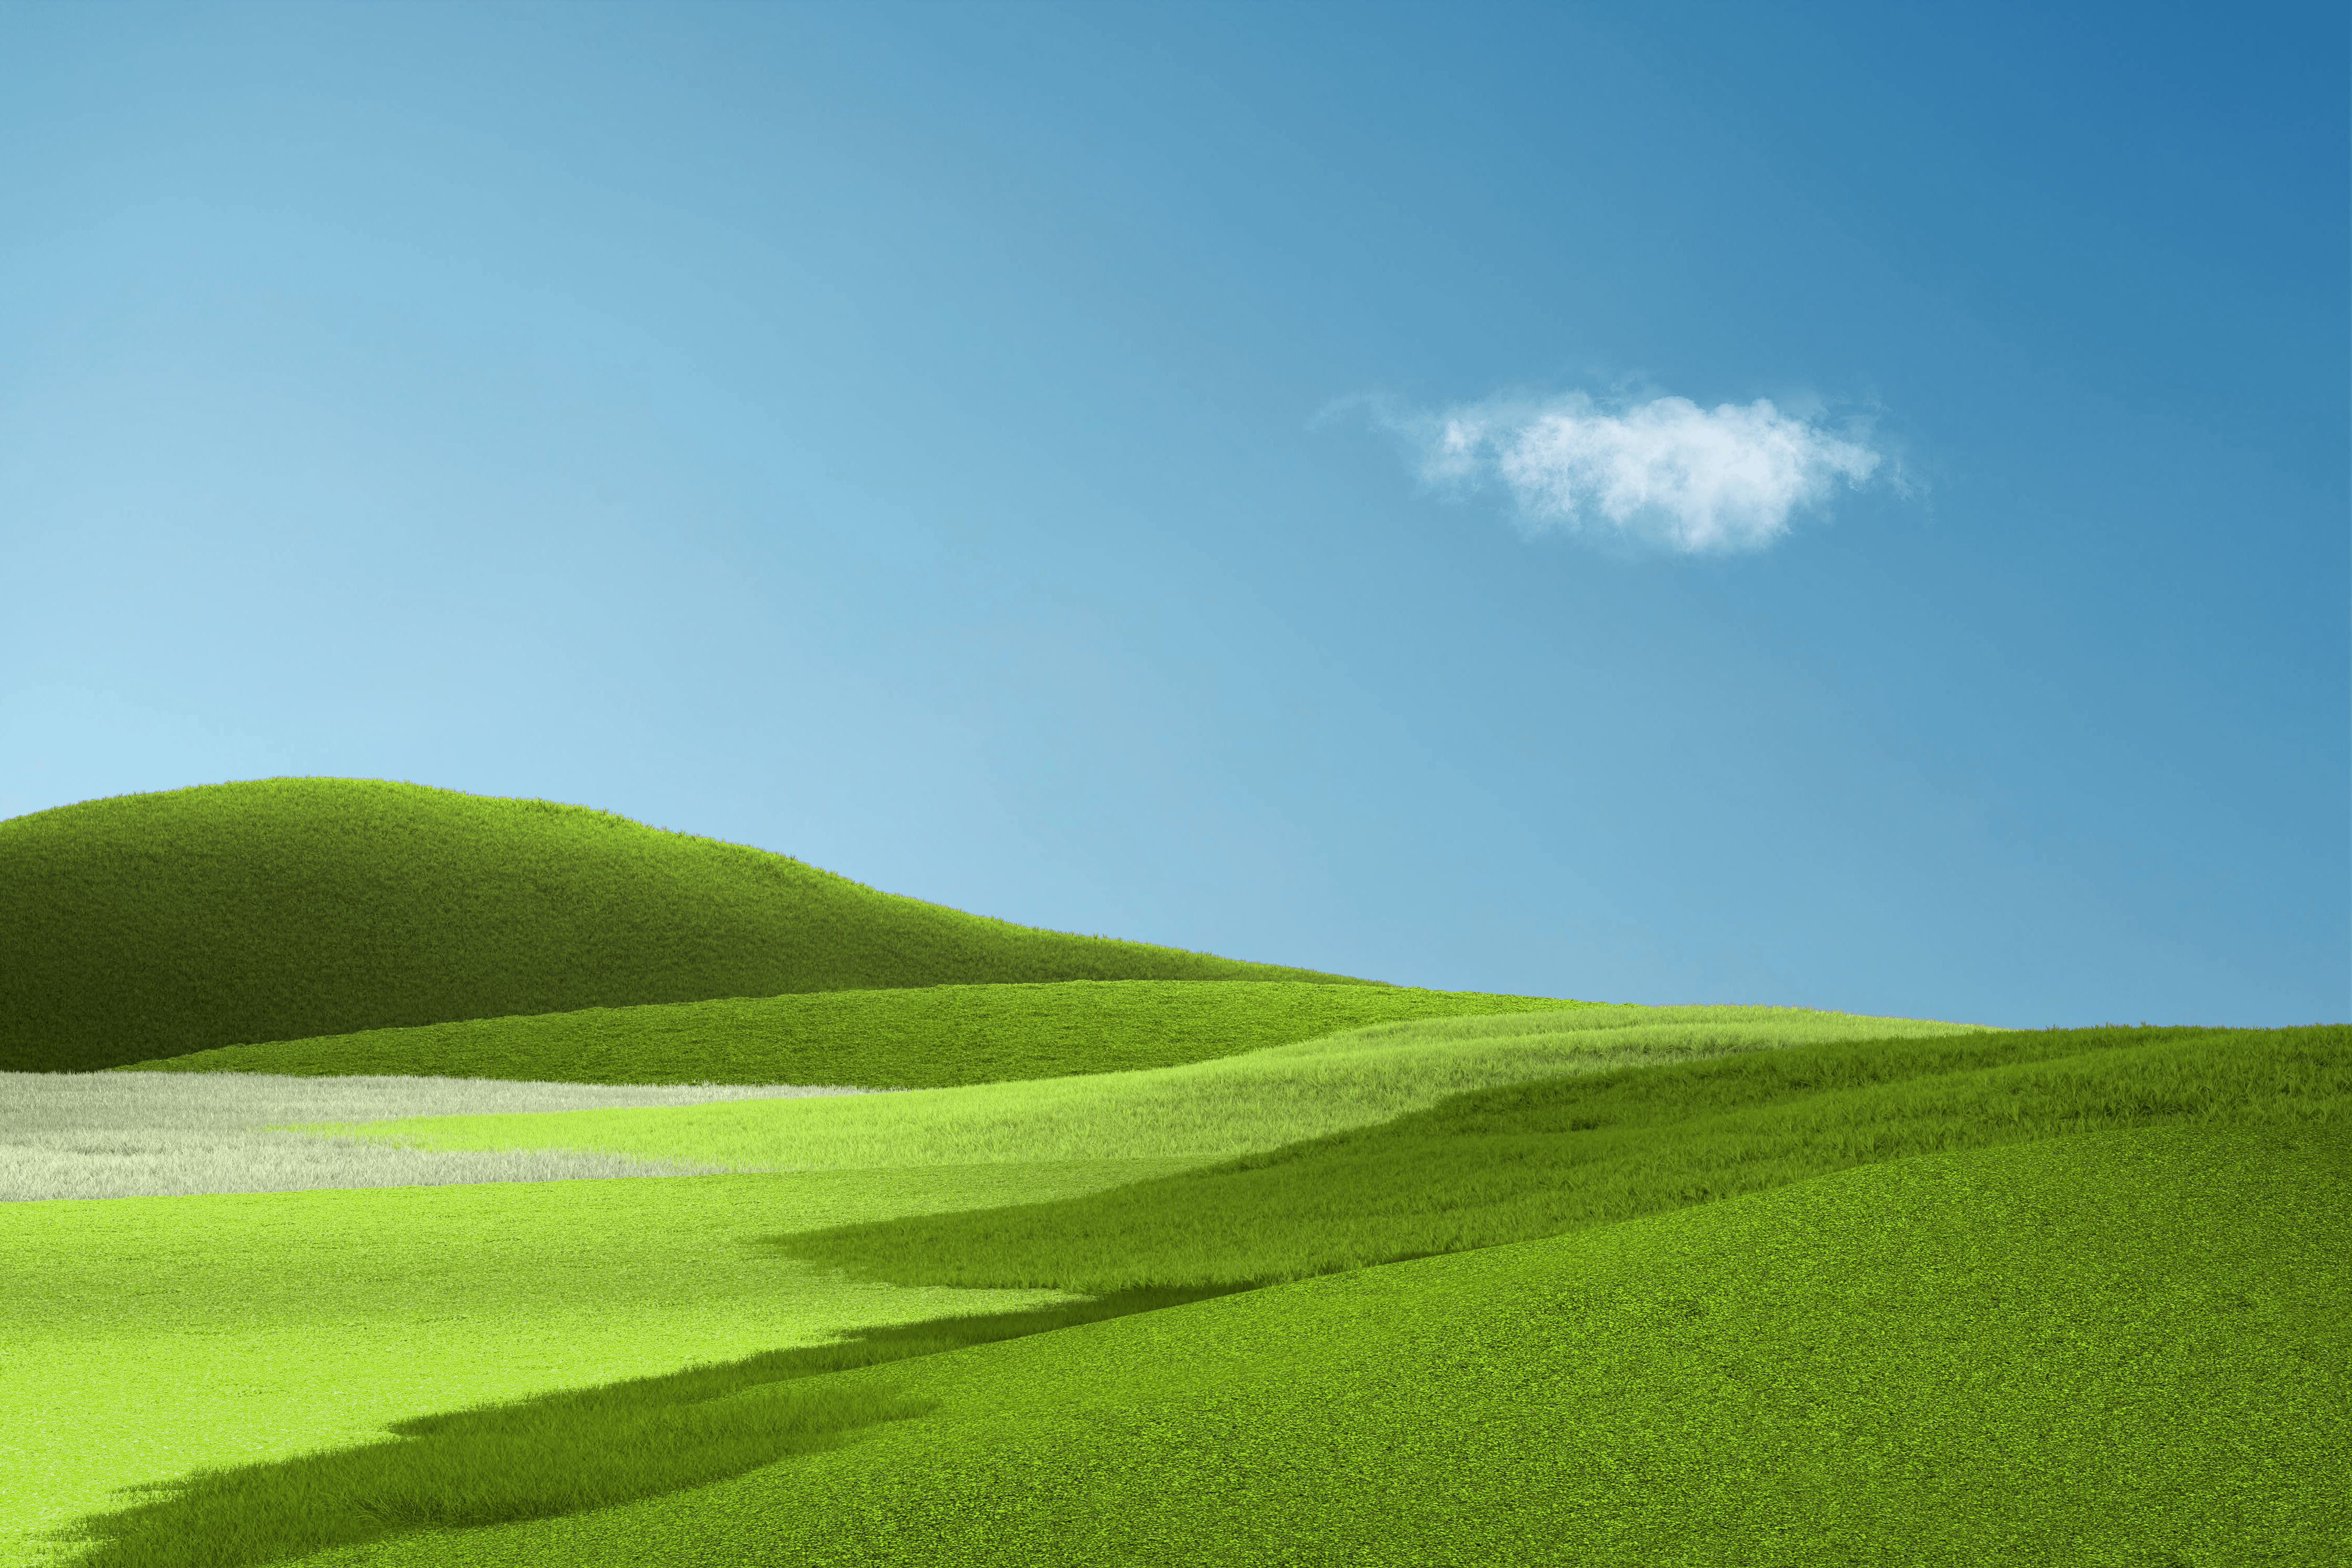 Aesthetic 4K Wallpaper, Landscape, Grass field, Green Grass, Clear sky, Blue Sky, Nature